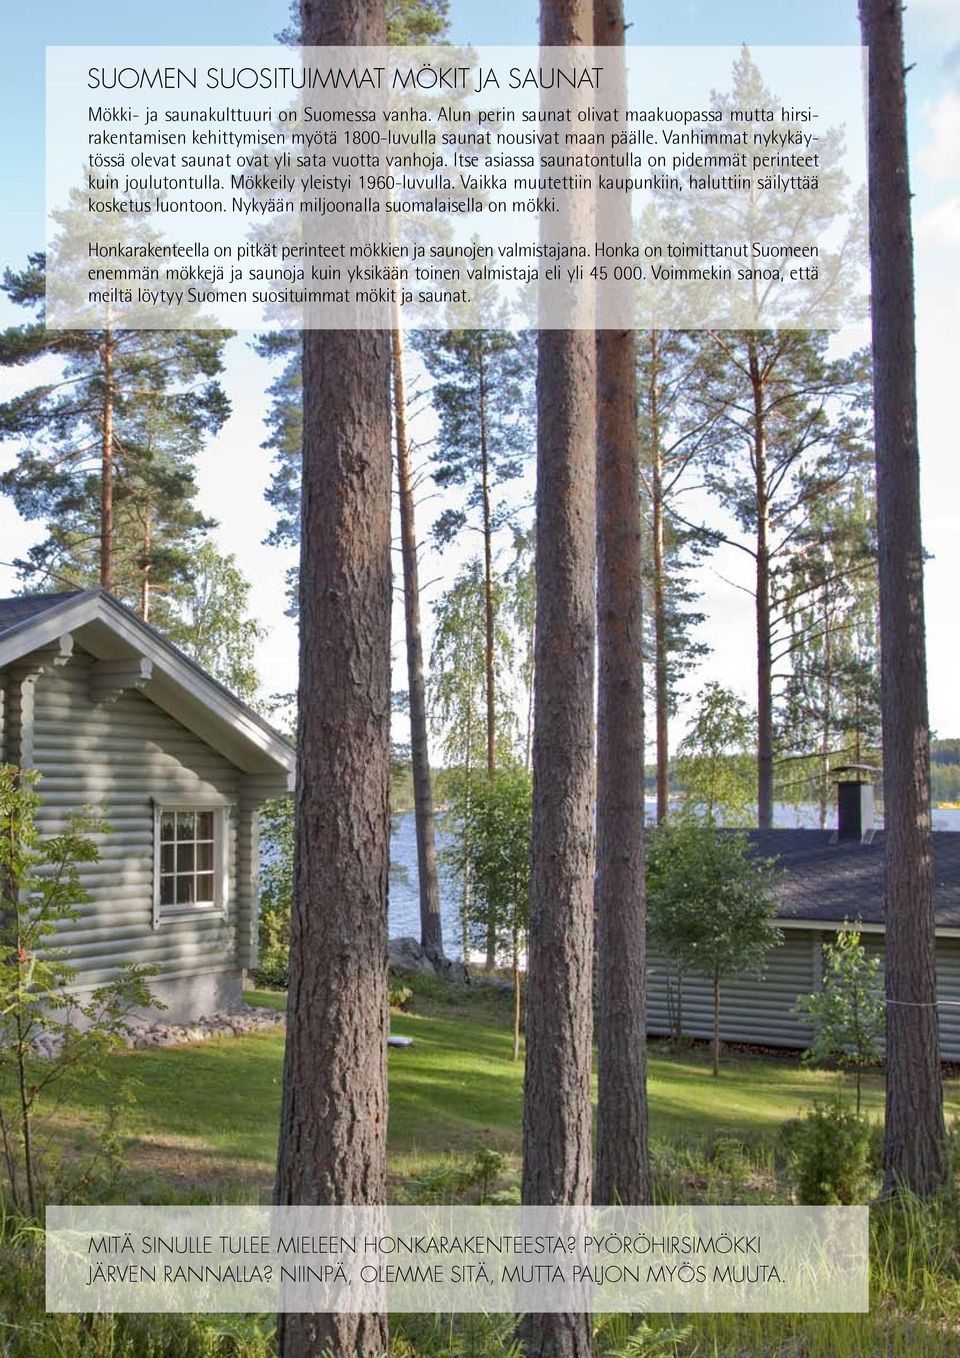 Vaikka muutettiin kaupunkiin, haluttiin säilyttää kosketus luontoon. Nykyään miljoonalla suomalaisella on mökki. Honkarakenteella on pitkät perinteet mökkien ja saunojen valmistajana.